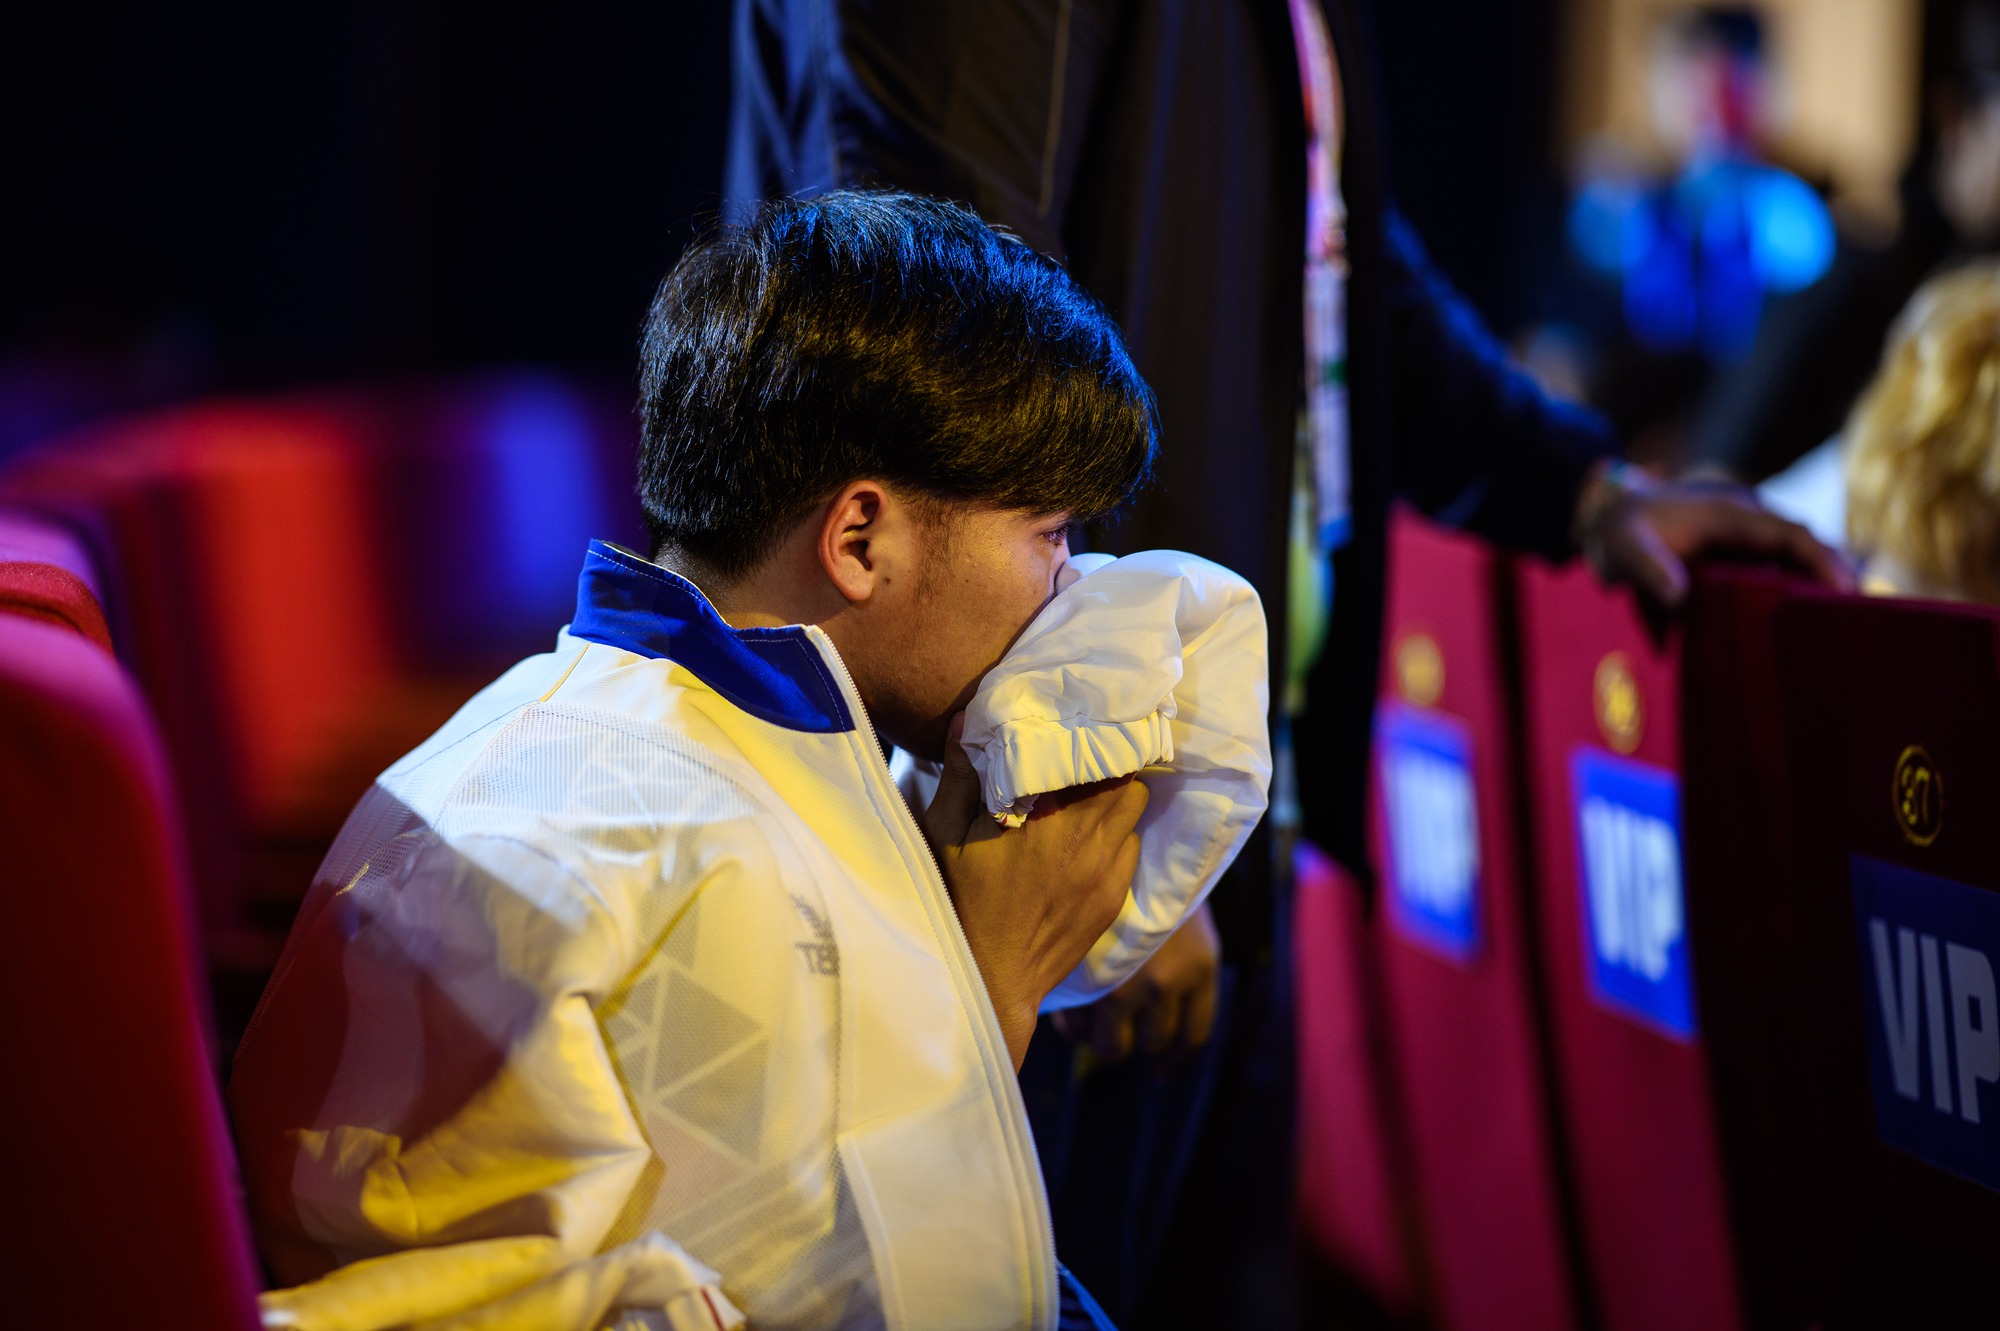 Tuyển thủ quốc tế khóc nức nở trên sân khấu Liên Quân tại SEA Games 31 - Ảnh 4.